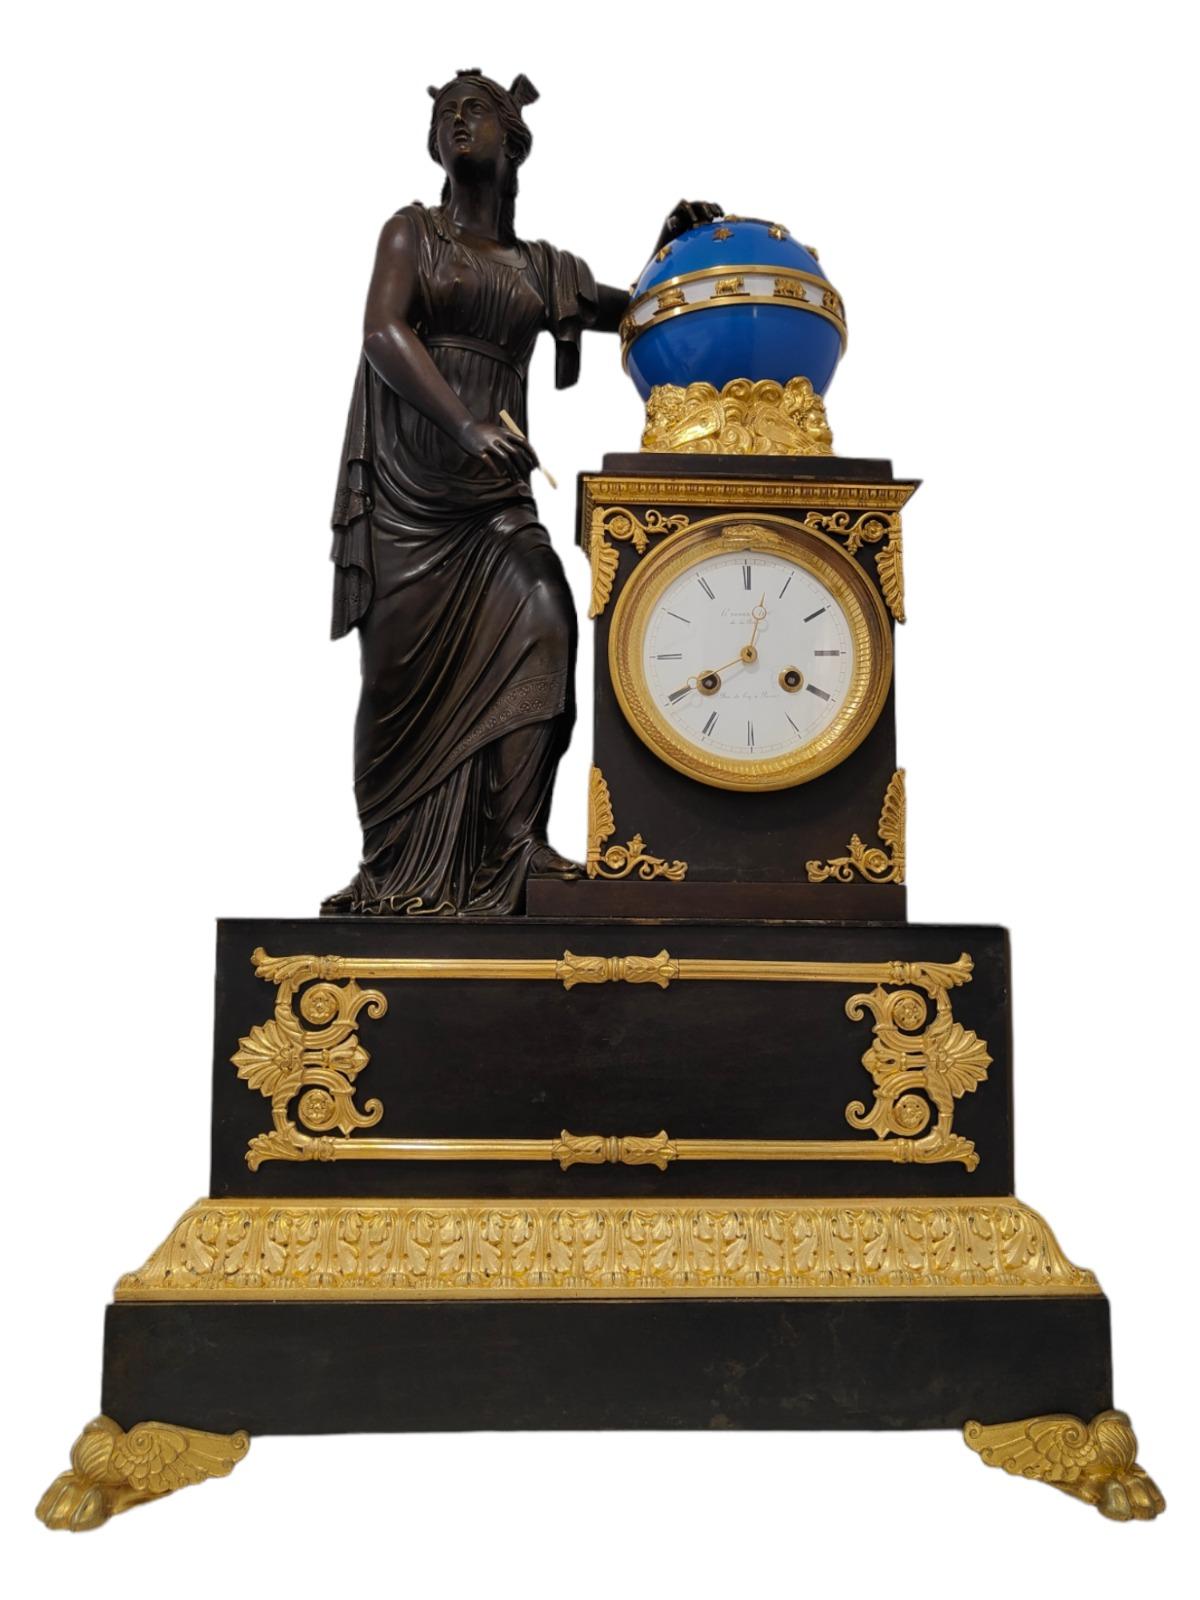 Empire-Manteluhr von H. Robert-Horloger De La Reine, Paris, ca. 1820-1830
Eine prächtige vergoldete und patinierte Empire-Bronze-Manteluhr mit acht Tagen Laufzeit, signiert auf dem weißen Email-Zifferblatt H.Robert-Horloger a la Reine . Das